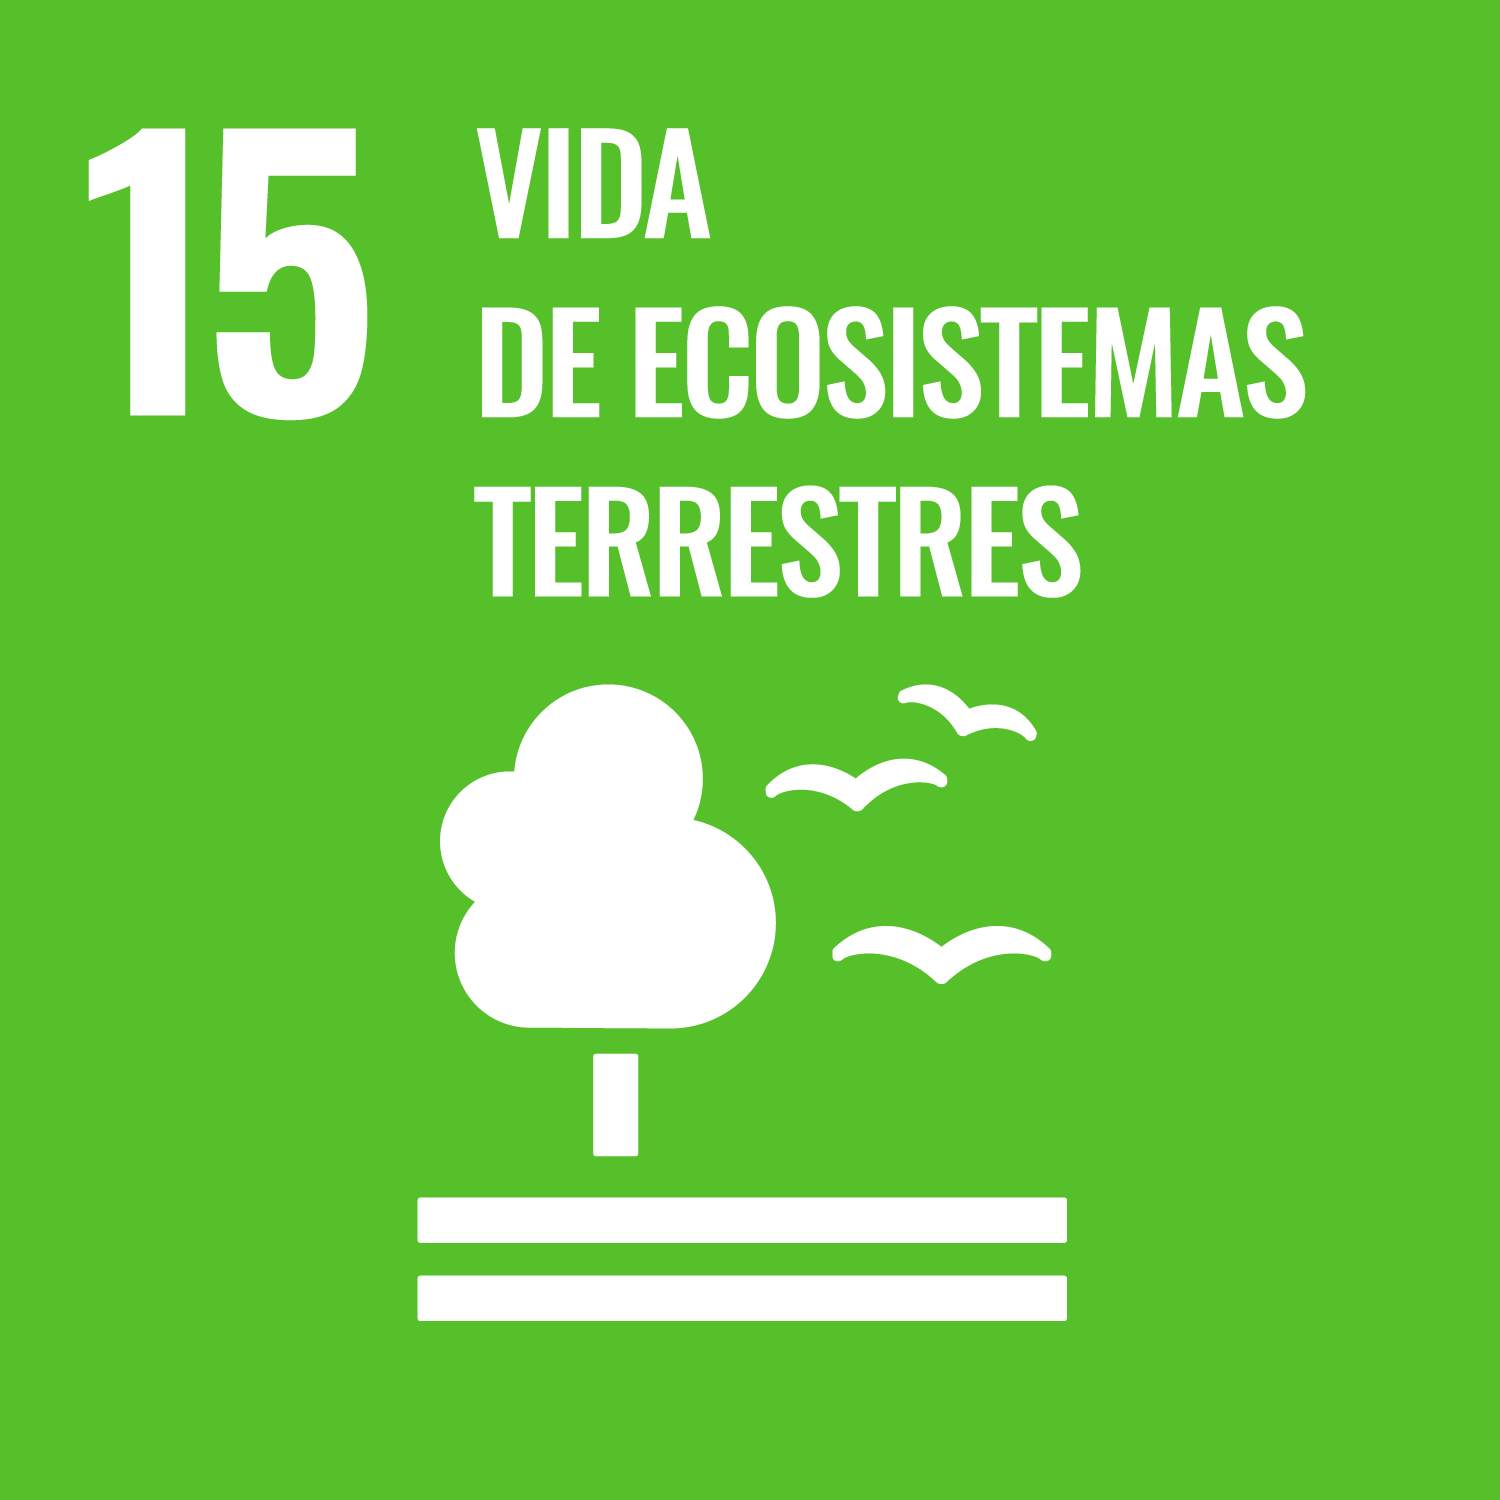 ODS 15 Objetivo de Desarrollo Sostenible Vida de ecosistemas terrestres